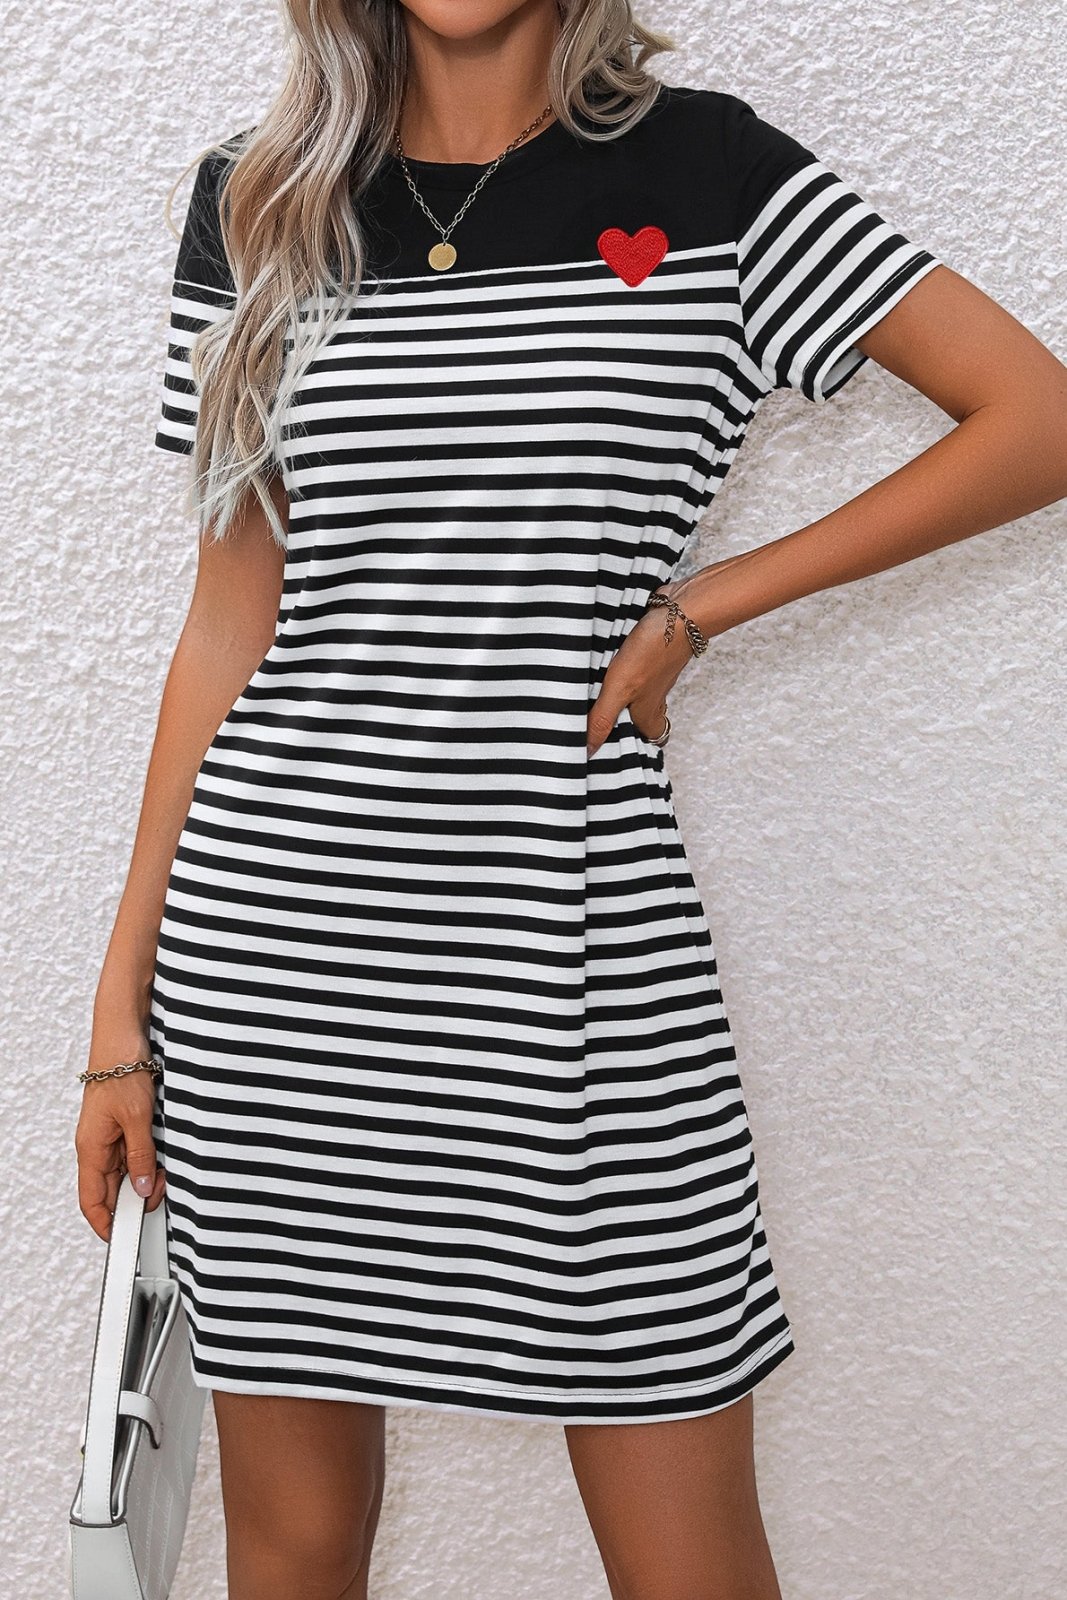 Striped Heart Short Sleeve Dress - Selden & Kingsley